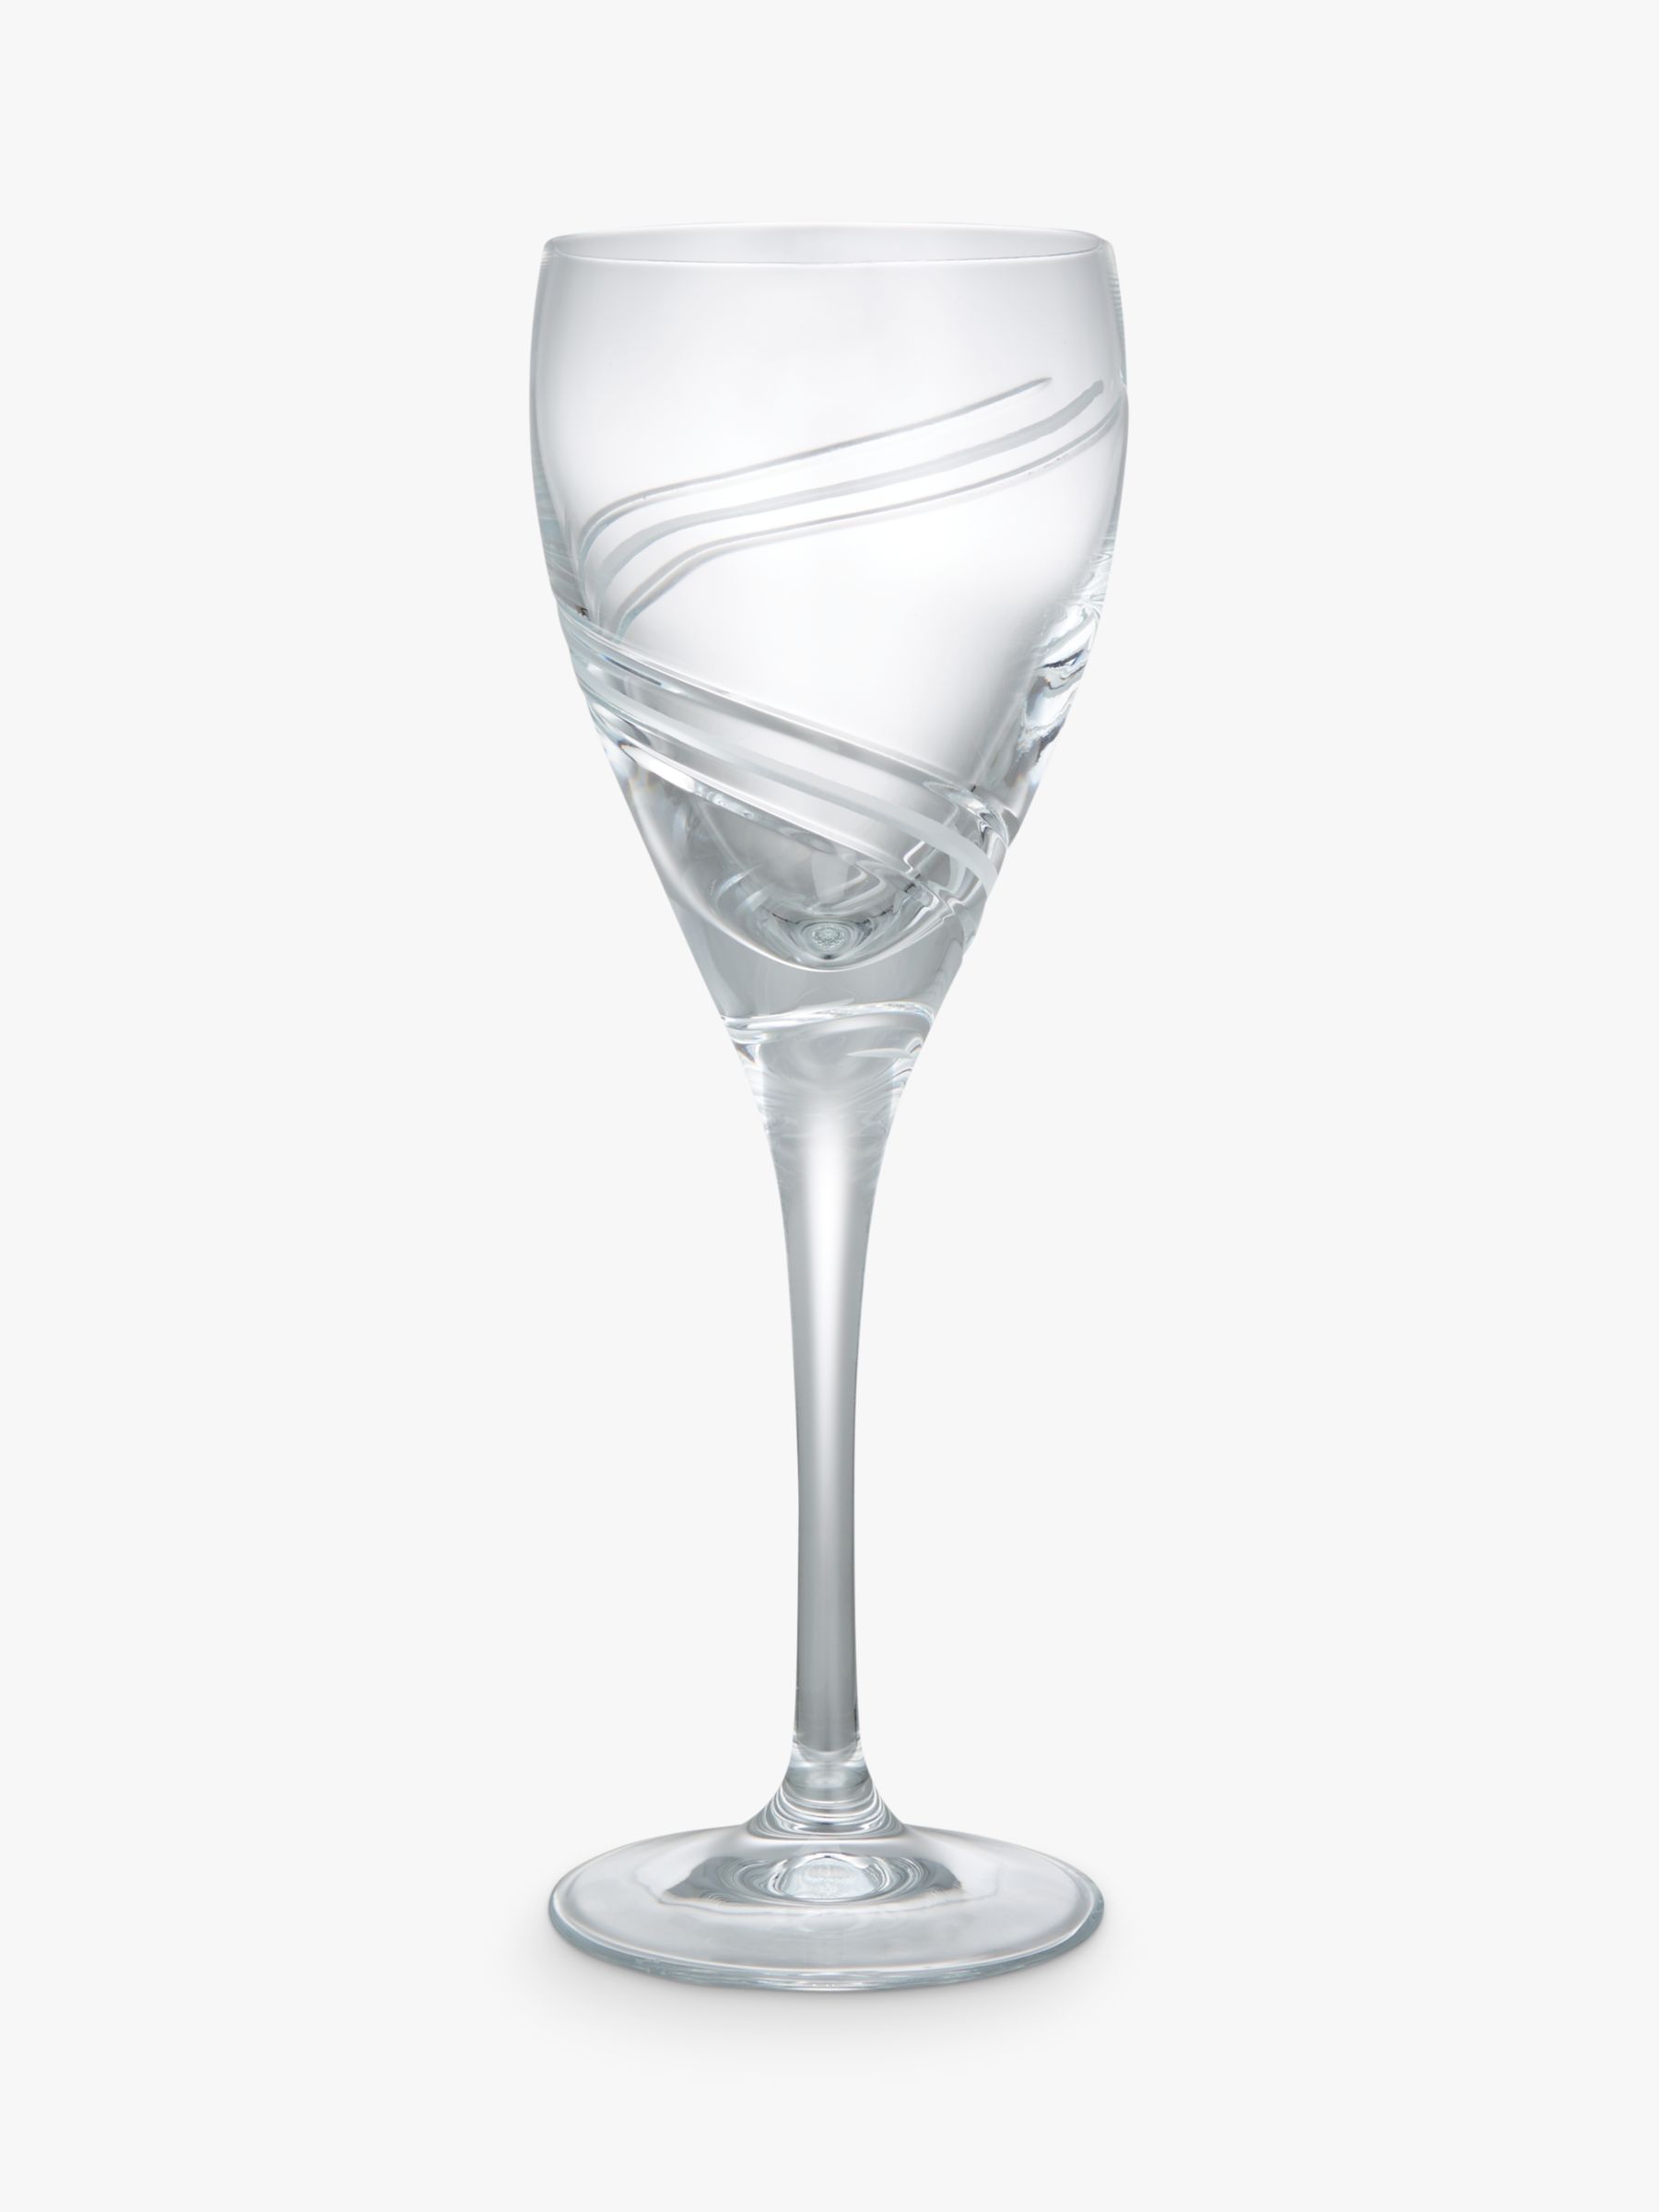 John Lewis & Partners Celestial Wine Glasses, 254ml, Set of 2